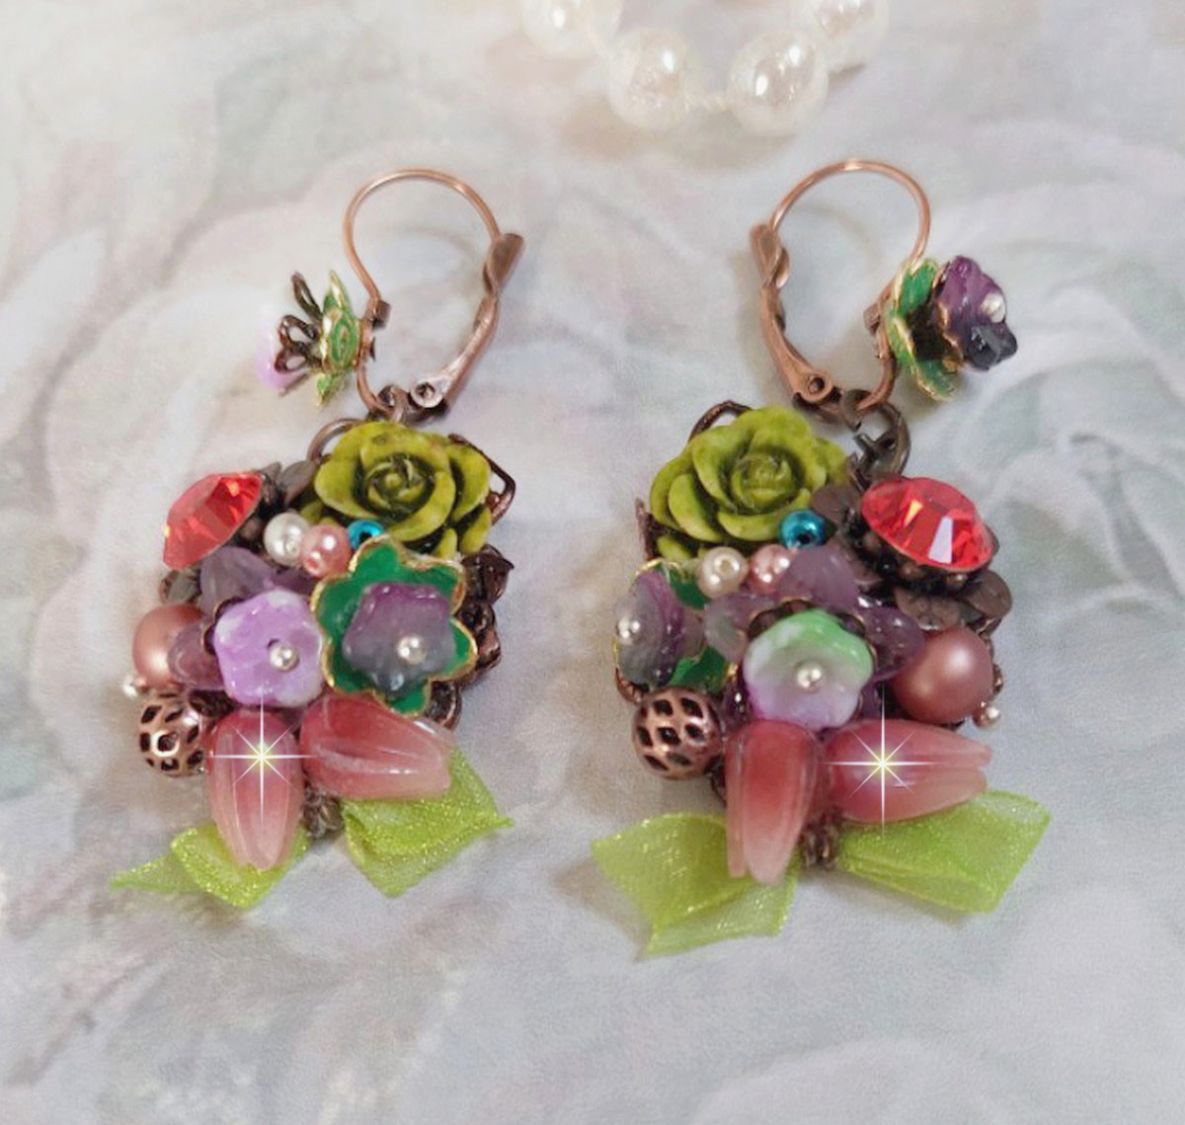 BO Fantasia de Fleurs créées avec des Cristaux, des perles rondes nacrées, des perles, clochettes en résine, en verre et du ruban Organza Anis